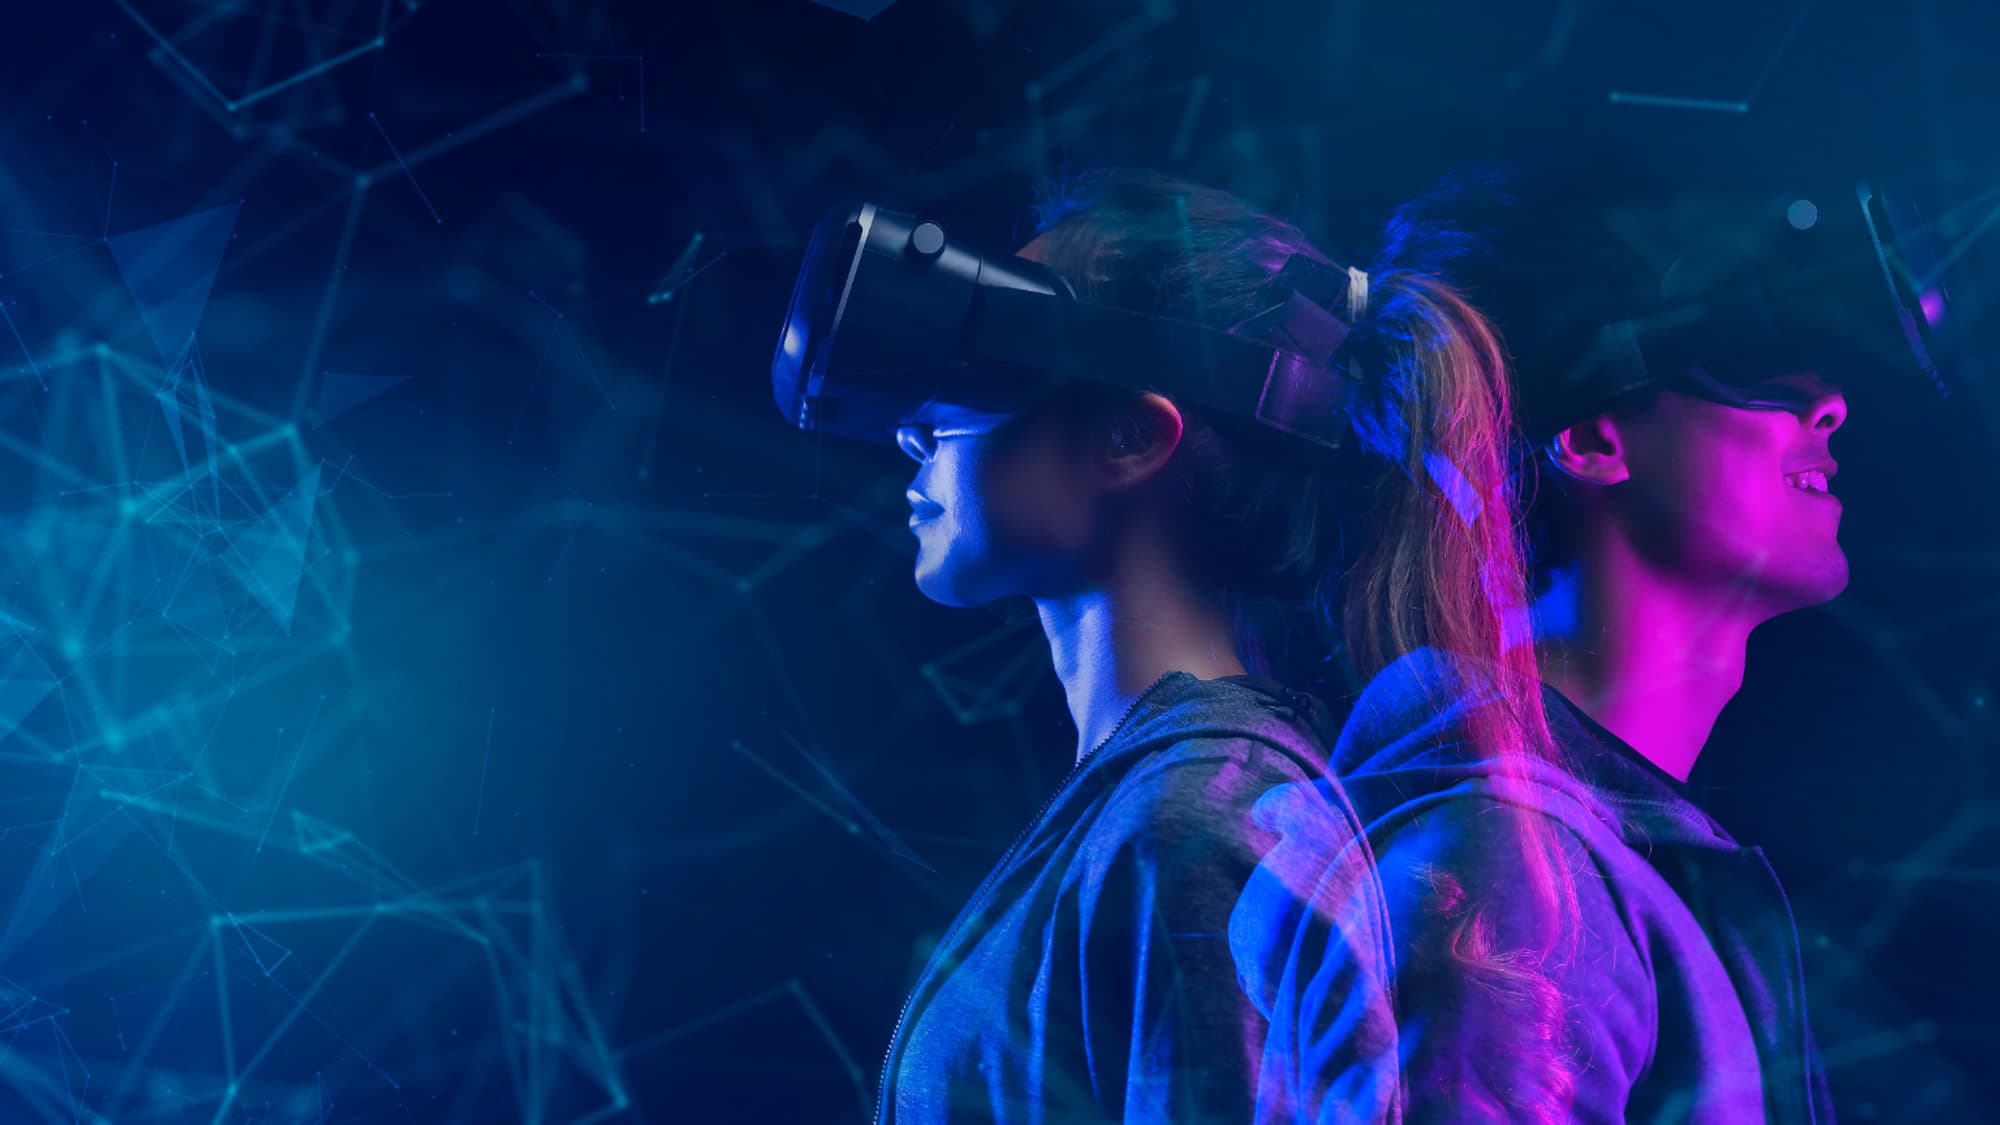 Le casque de réalité virtuelle et augmentée d'Apple pourrait s'appeler  Reality - Les Numériques